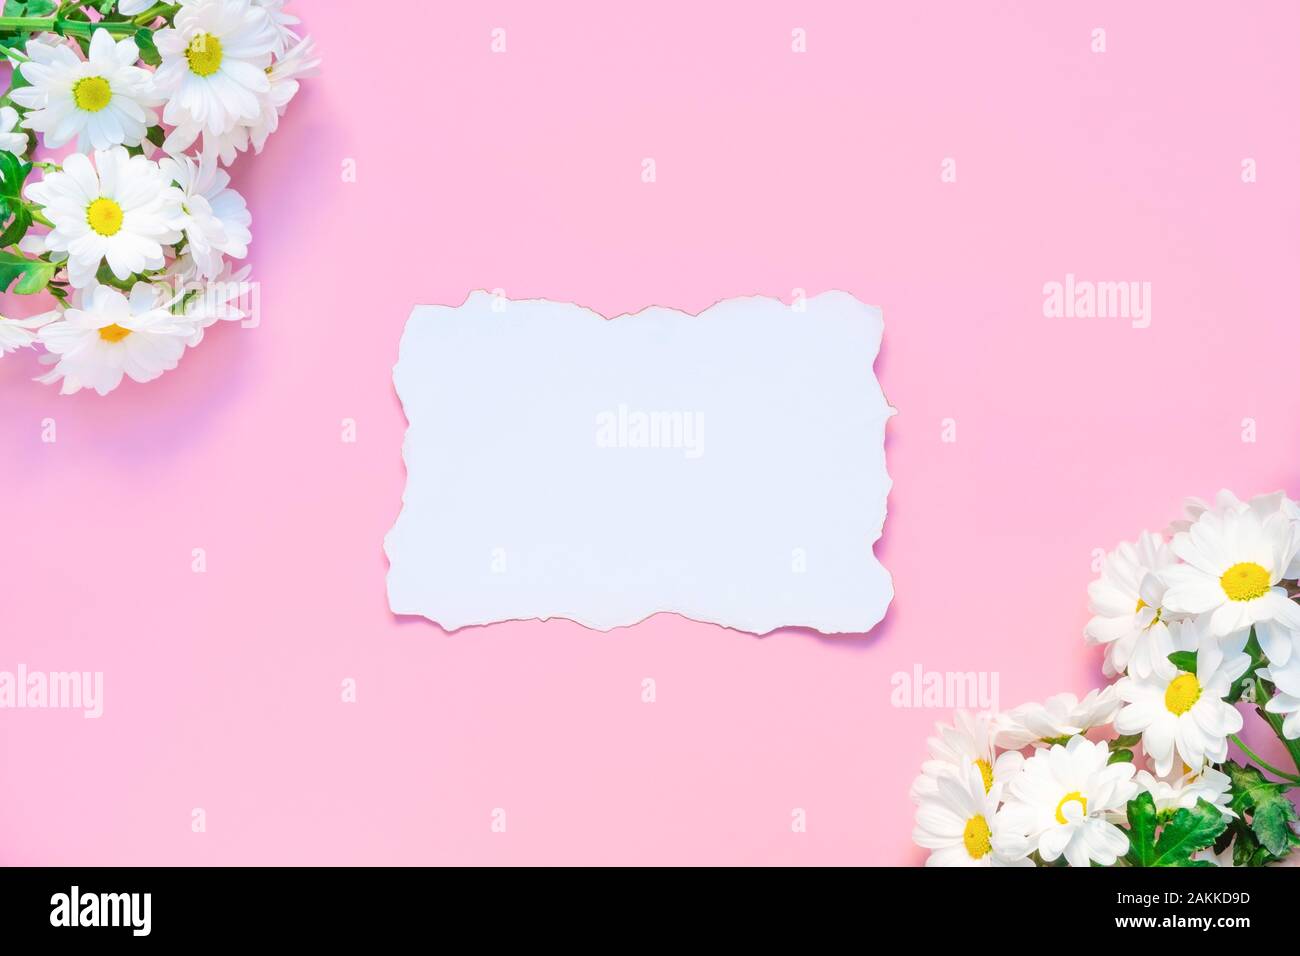 Geburtstag oder Hochzeitsmockup mit weißen Chrysanthemen Blumen und weißer leerer Papierliste auf pastellrosa Hintergrund Stockfoto